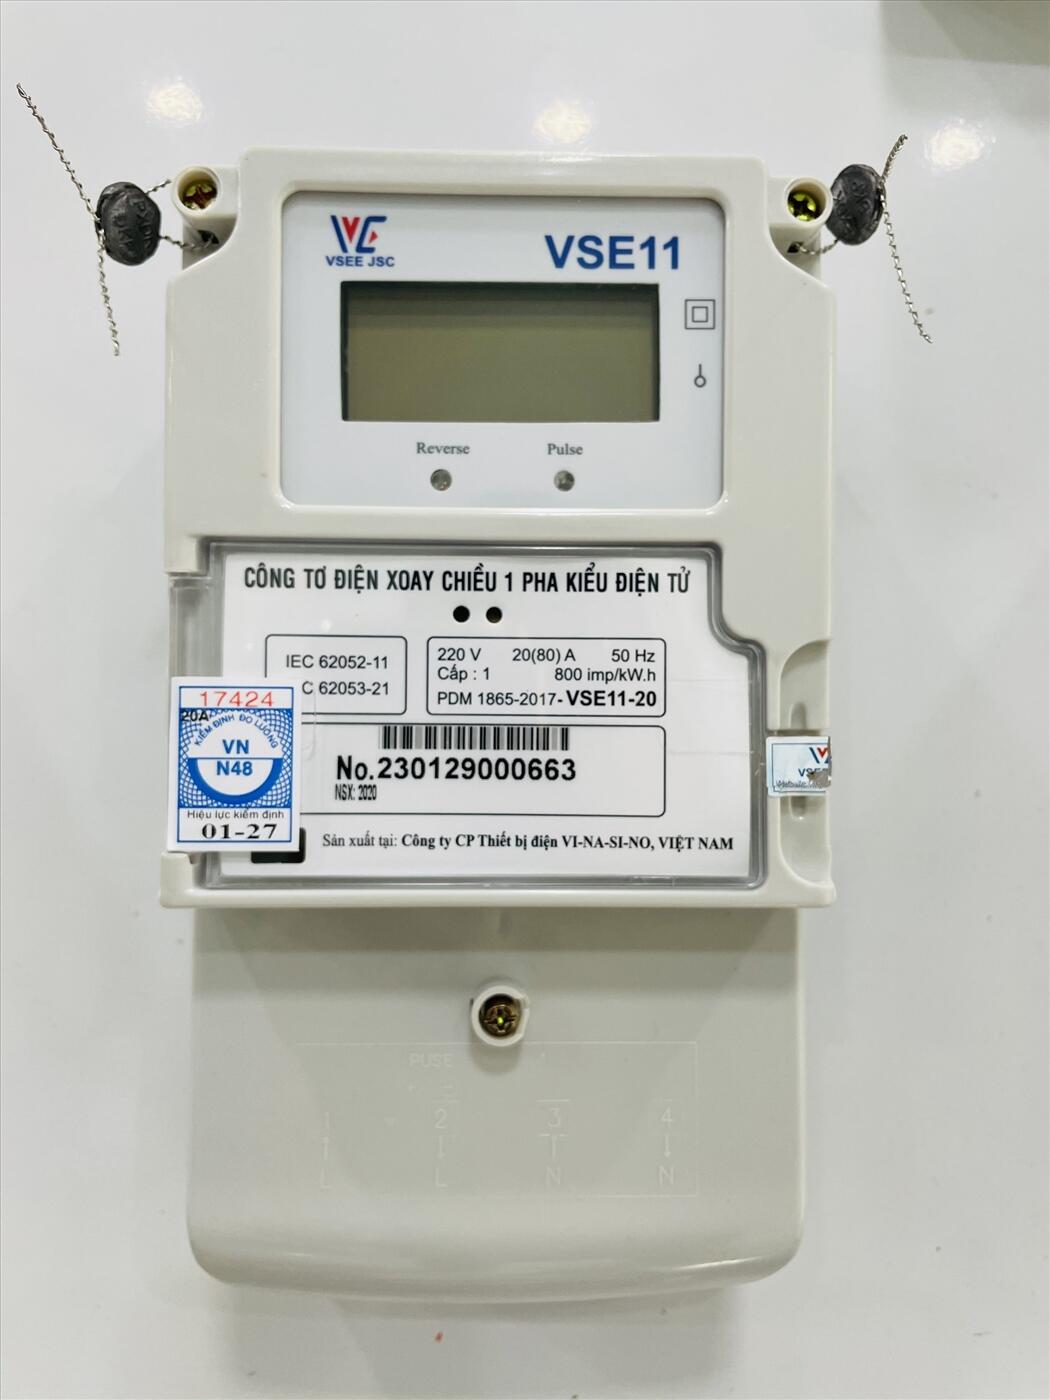 Lợi ích của việc sử dụng thiết bị đo đếm điện năng sử dụng xung đếm trong sản xuất và tiết kiệm năng lượng.